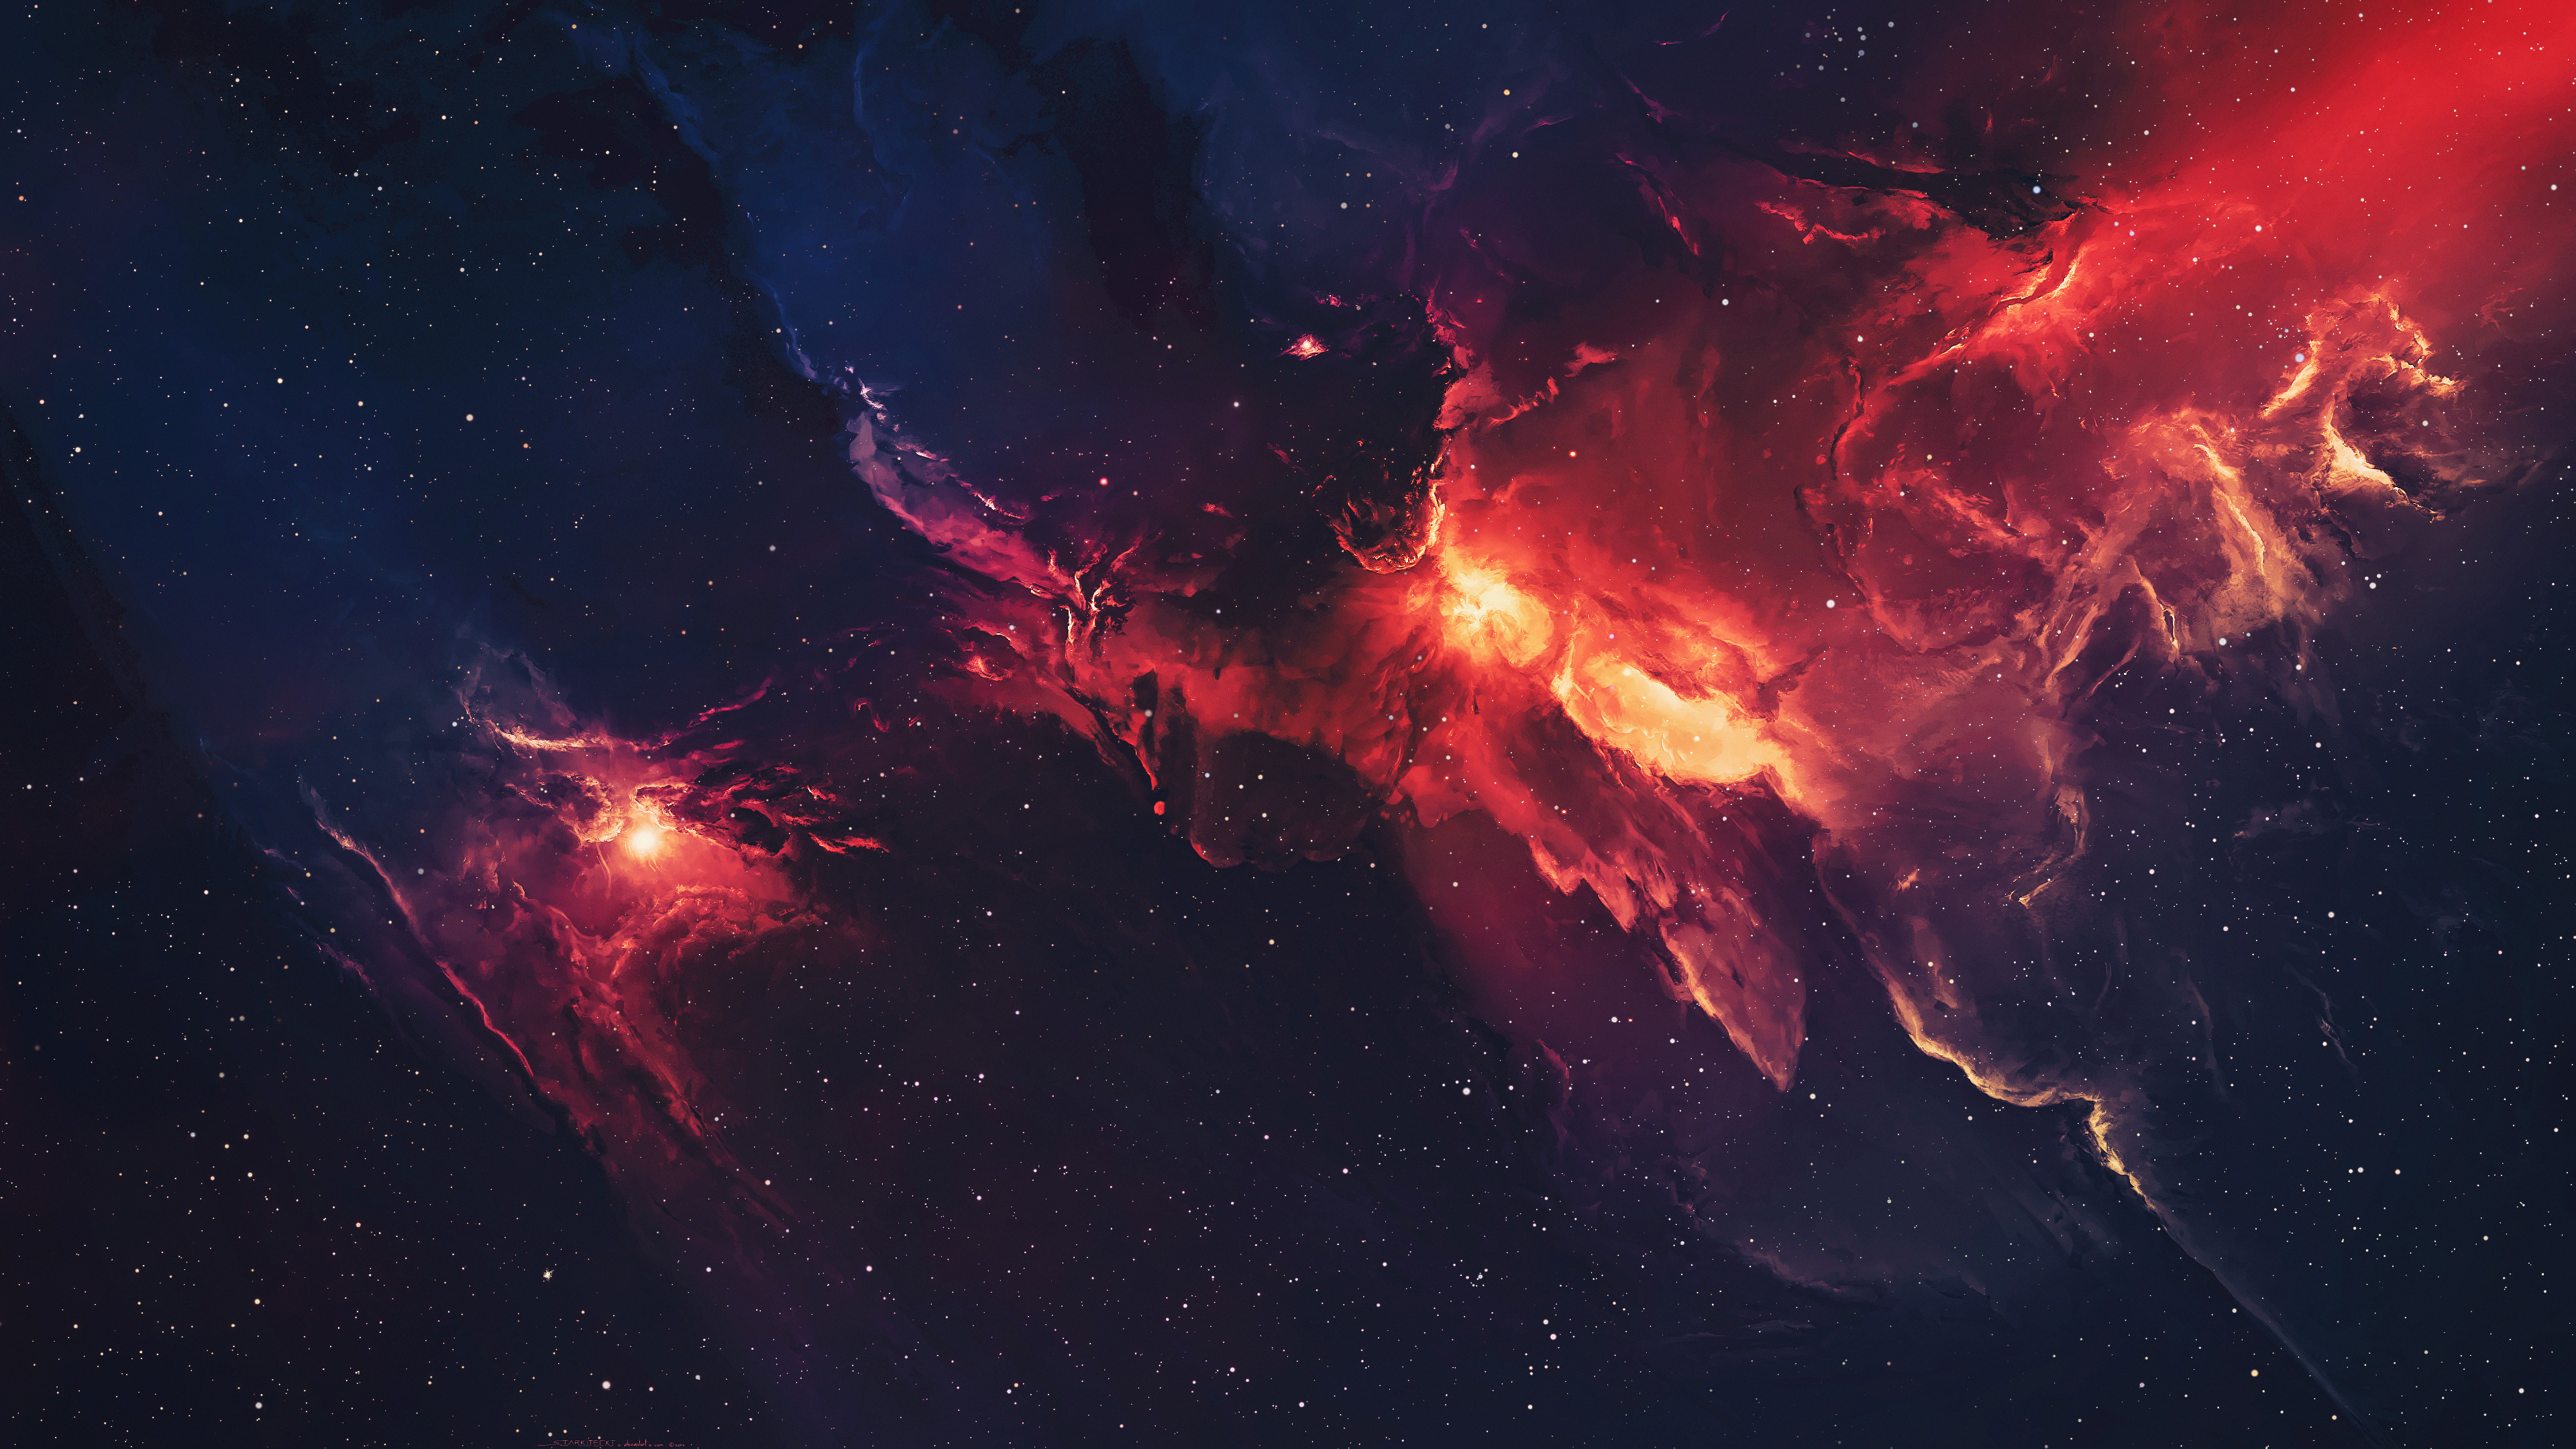 Galactic wonder, Celestial beauty, Nebula spectacle, Star-studded universe, 3840x2160 4K Desktop